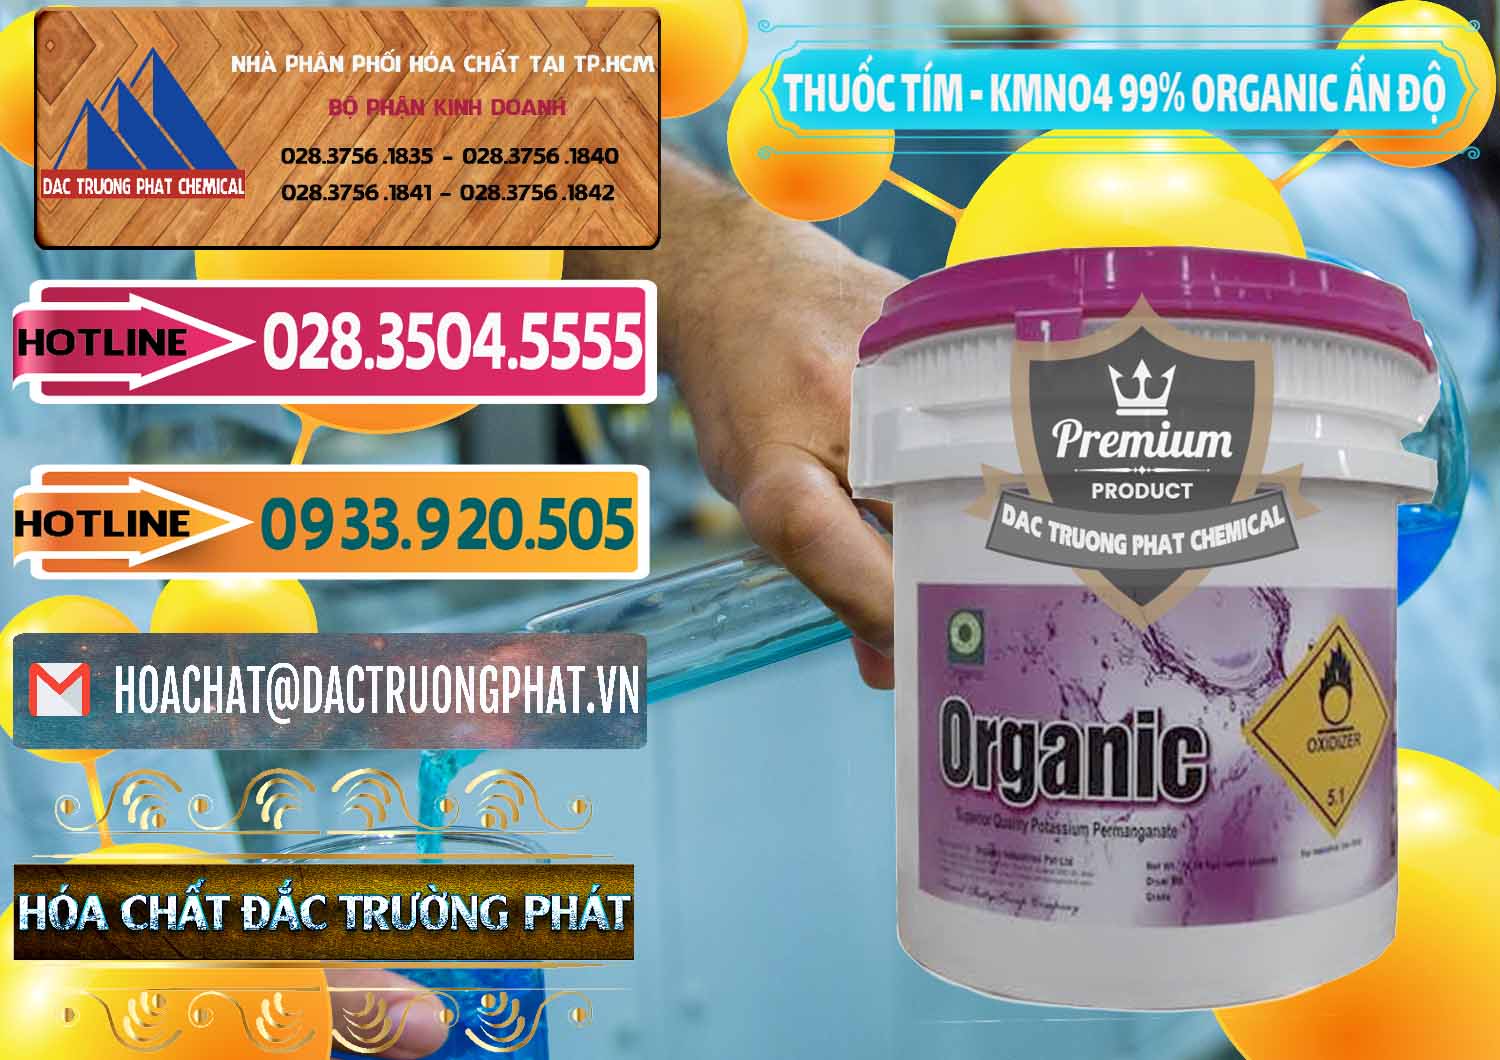 Bán ( phân phối ) Thuốc Tím - KMNO4 99% Organic Ấn Độ India - 0216 - Công ty kinh doanh - phân phối hóa chất tại TP.HCM - dactruongphat.vn